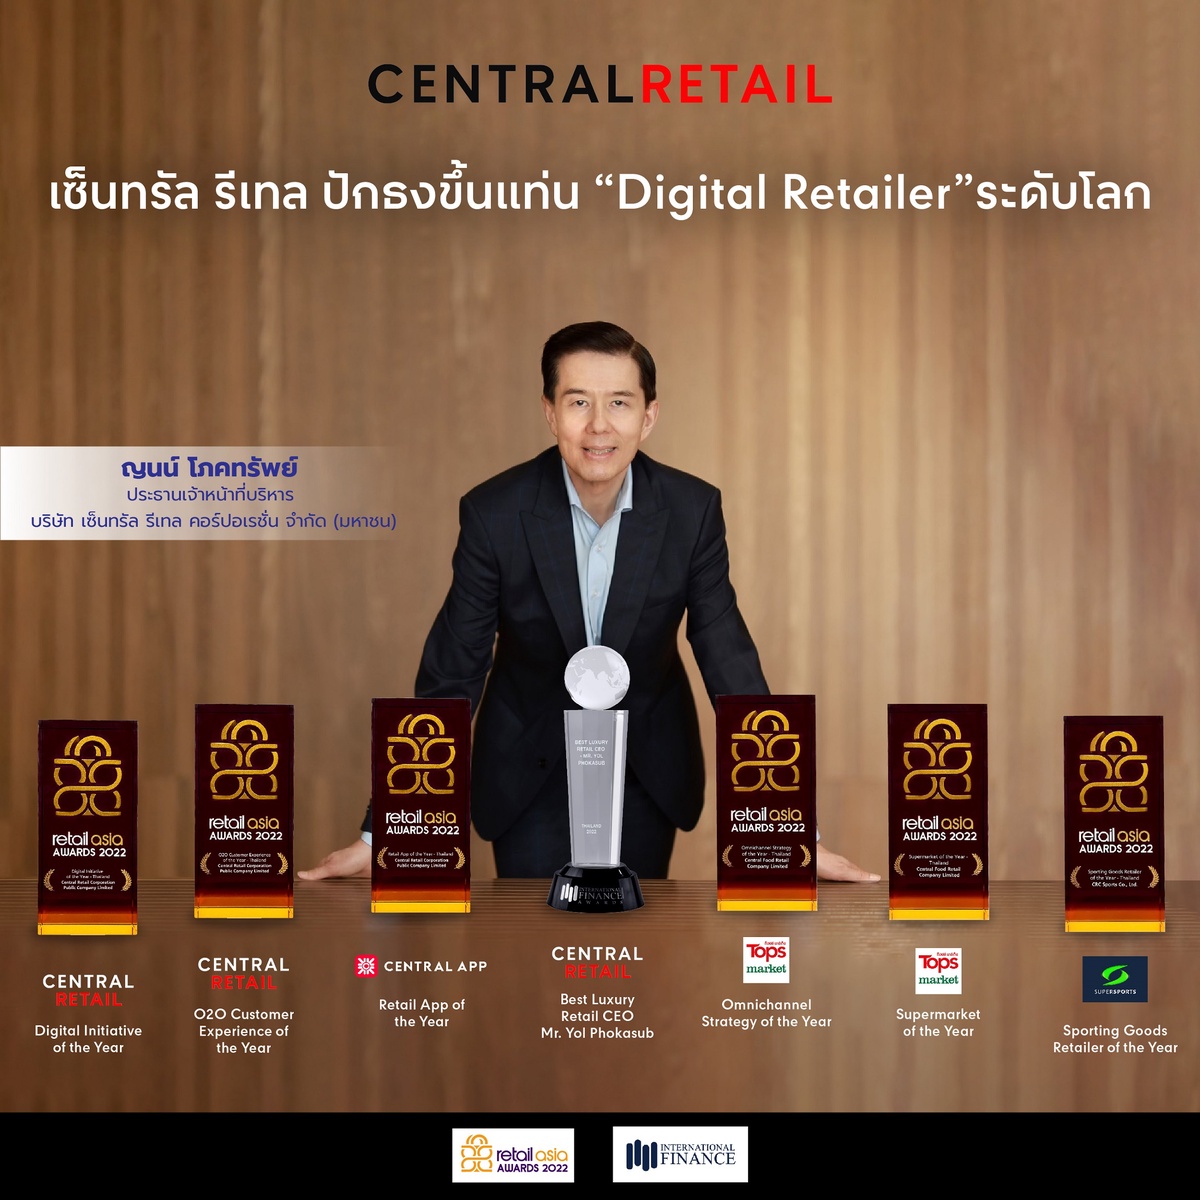 เซ็นทรัล รีเทล ปักธงขึ้นแท่น Digital Retailer ระดับโลก